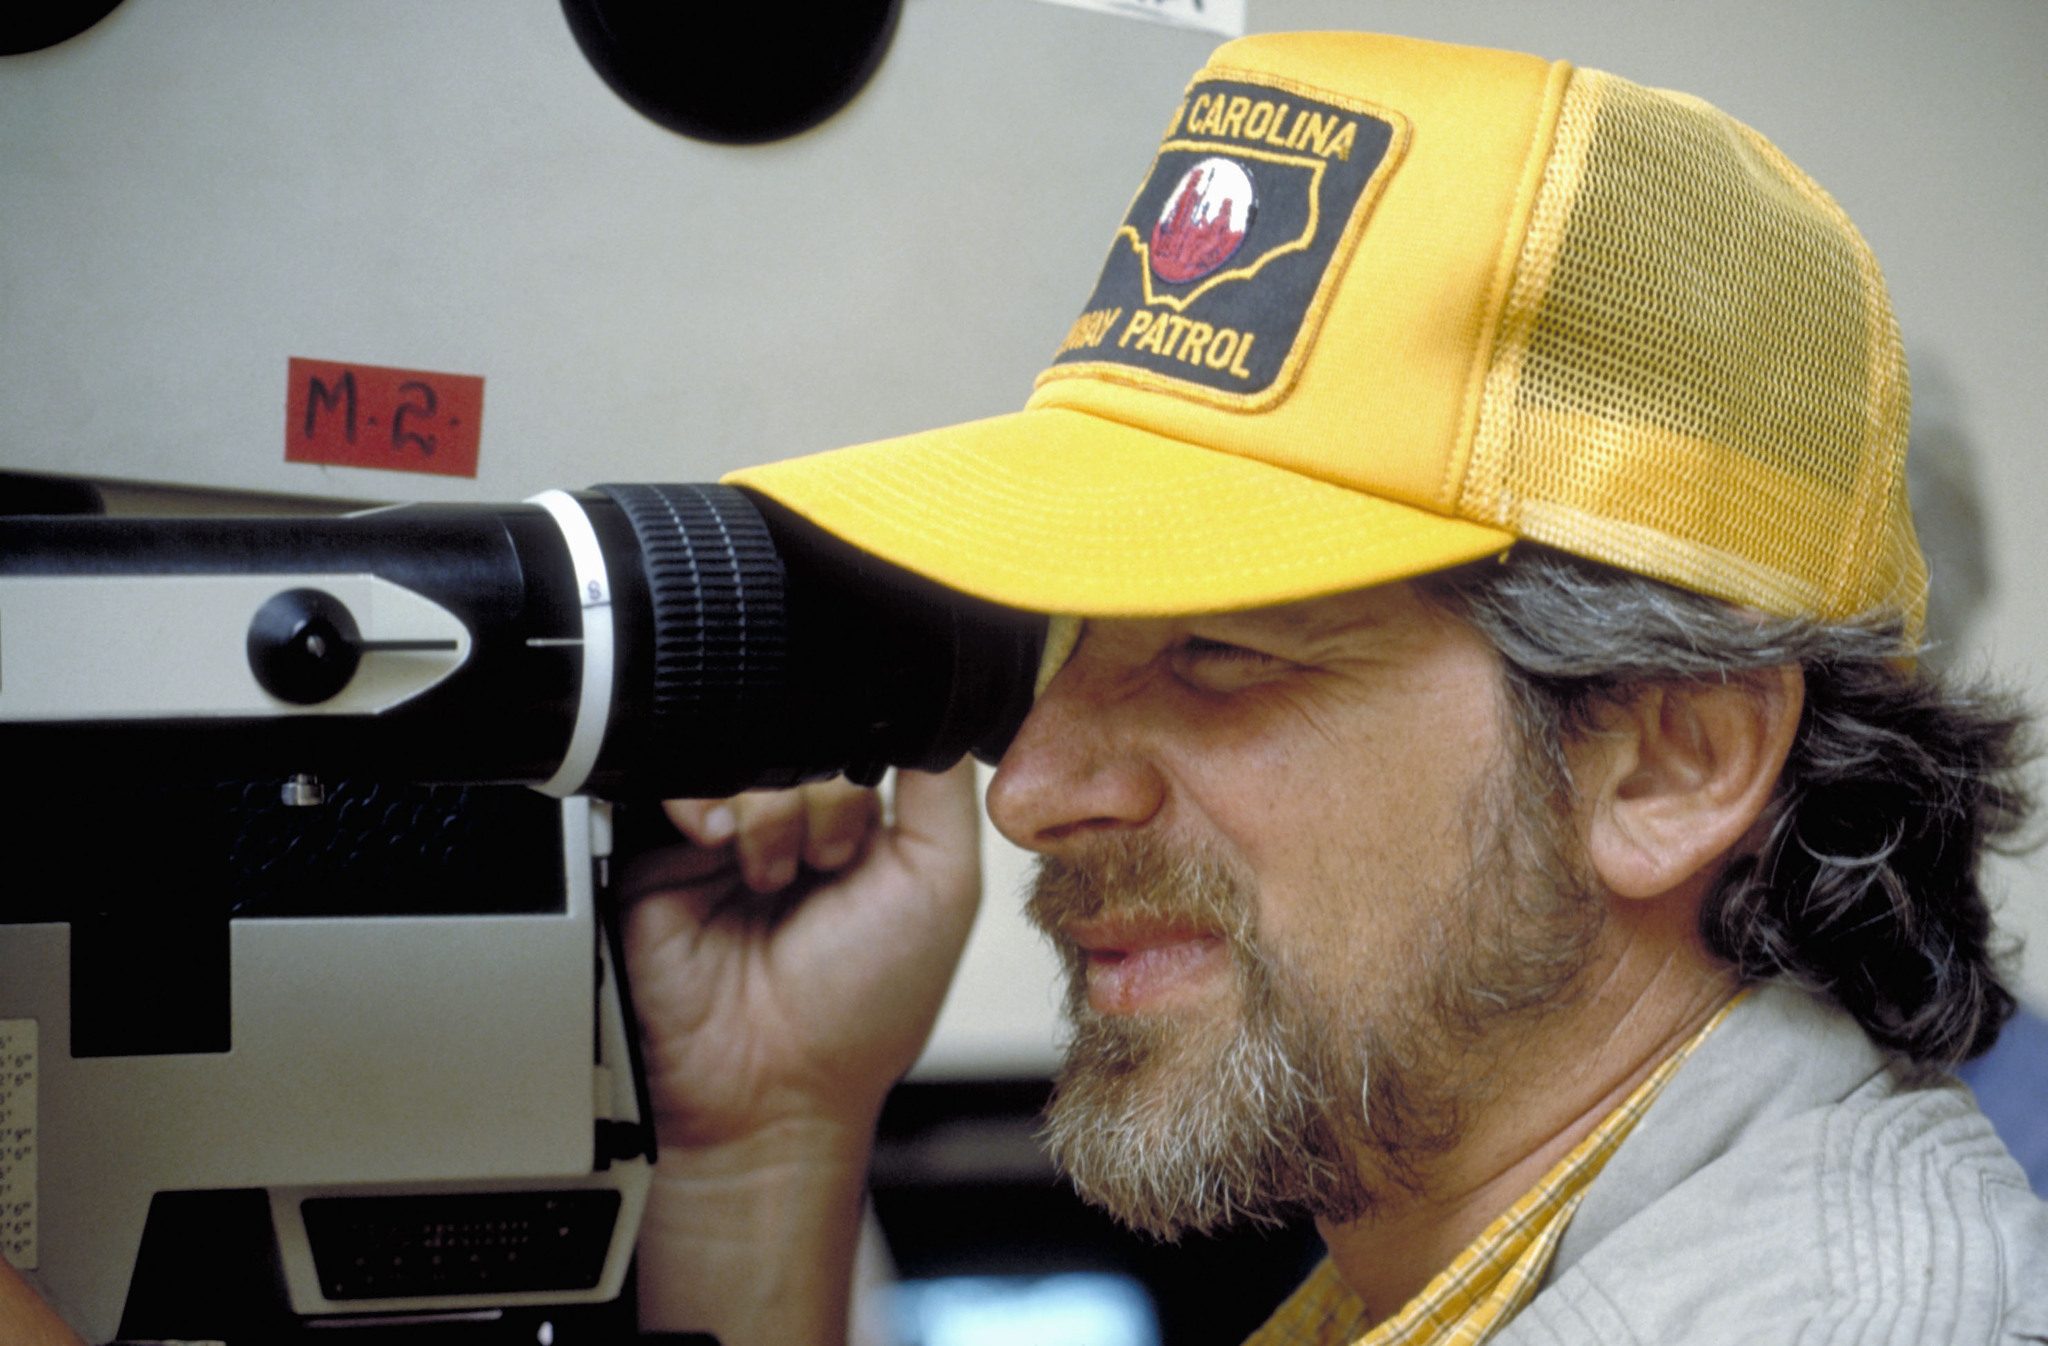 Steven Spielberg in Indiana Dzounsas ir paskutinis kryziaus zygis (1989)